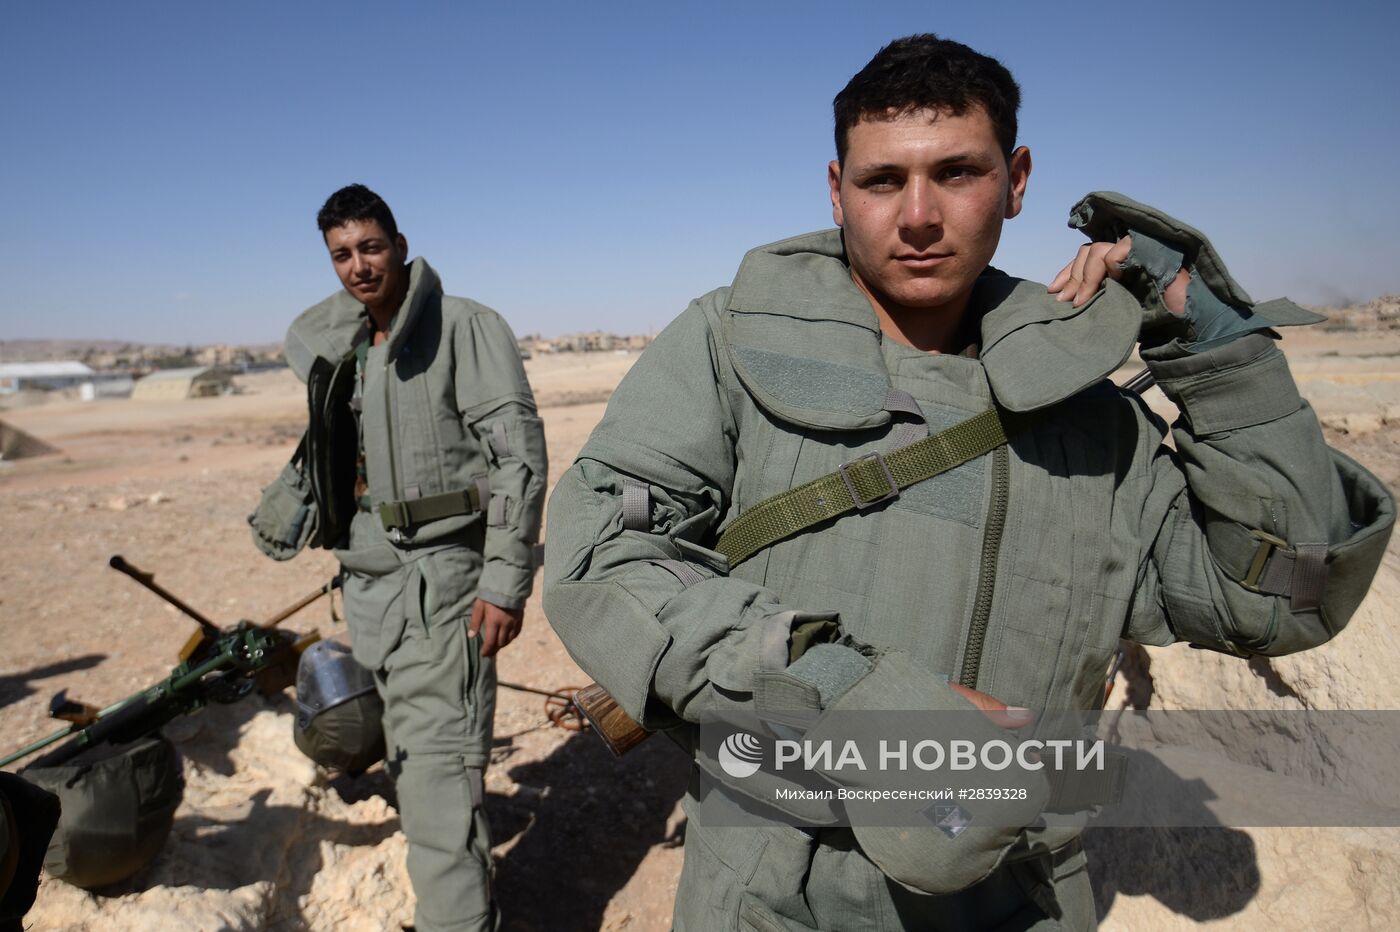 Обучение сирийских солдат поисковой тактике и обнаружению взрывных устройств